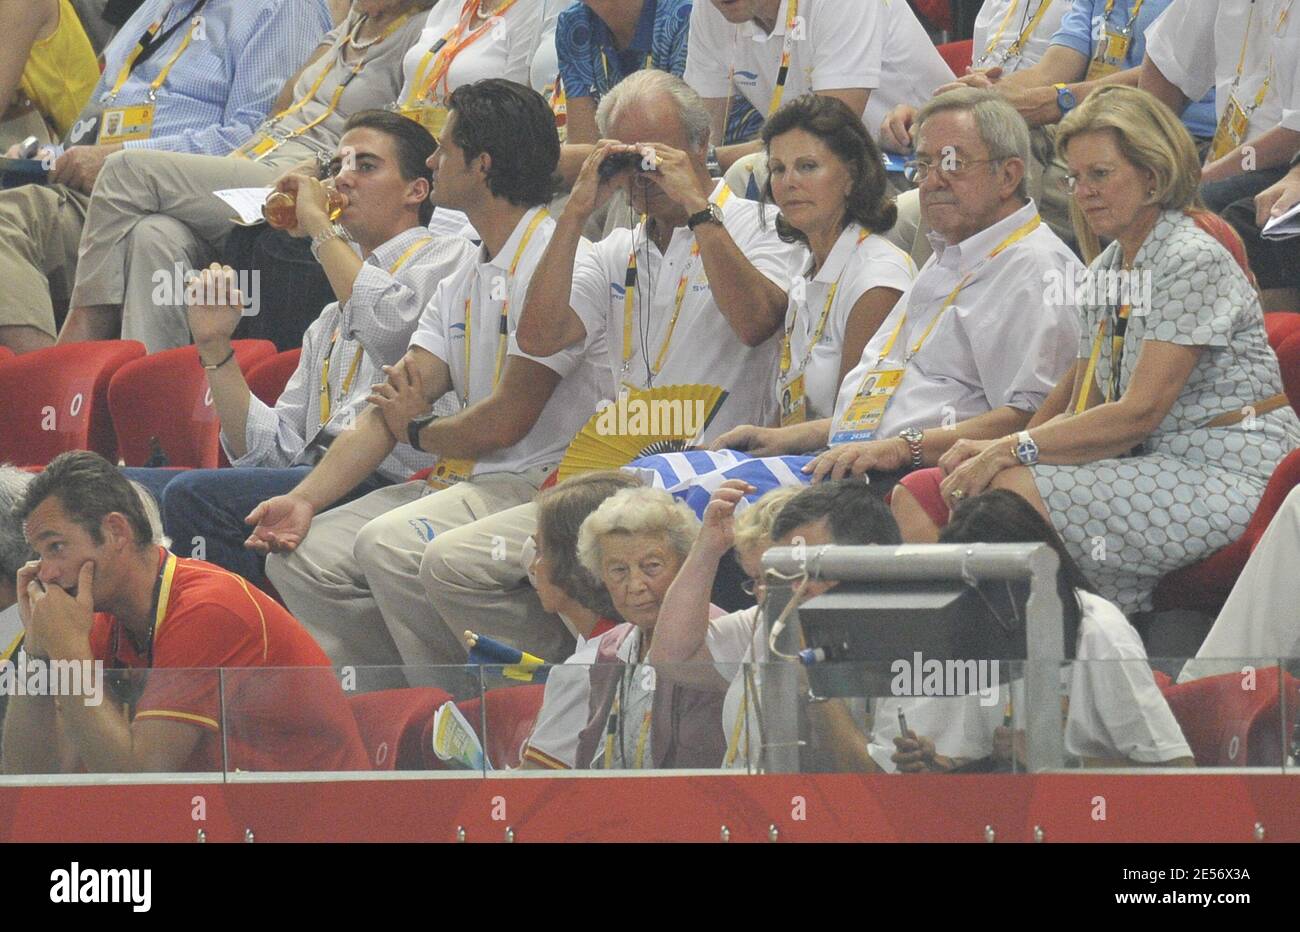 (L-R) il principe Filippo di Grecia, il principe Carlo Filippo di Svezia, il re Carl XVI Gustaf e la moglie Regina Silvia, ex regina Anna-Maria di Grecia con suo marito ex-re Costantino di Grecia, il principe ereditario danese Frederik, la regina Sofia di Spagna, l'Inaki Urdangarin di Spagna, La principessa Cristina di Spagna e la regina Sofia si sono svolte il 2008° giorno dei Giochi Olimpici di Pechino 11 allo Stadio Nazionale 'Bird's Nest' di Beinjing, in Cina, il 19 agosto 2008. Foto di Gouhier-Hahn-Nebinger/Cameleon/ABACAPRESS.COM Foto Stock